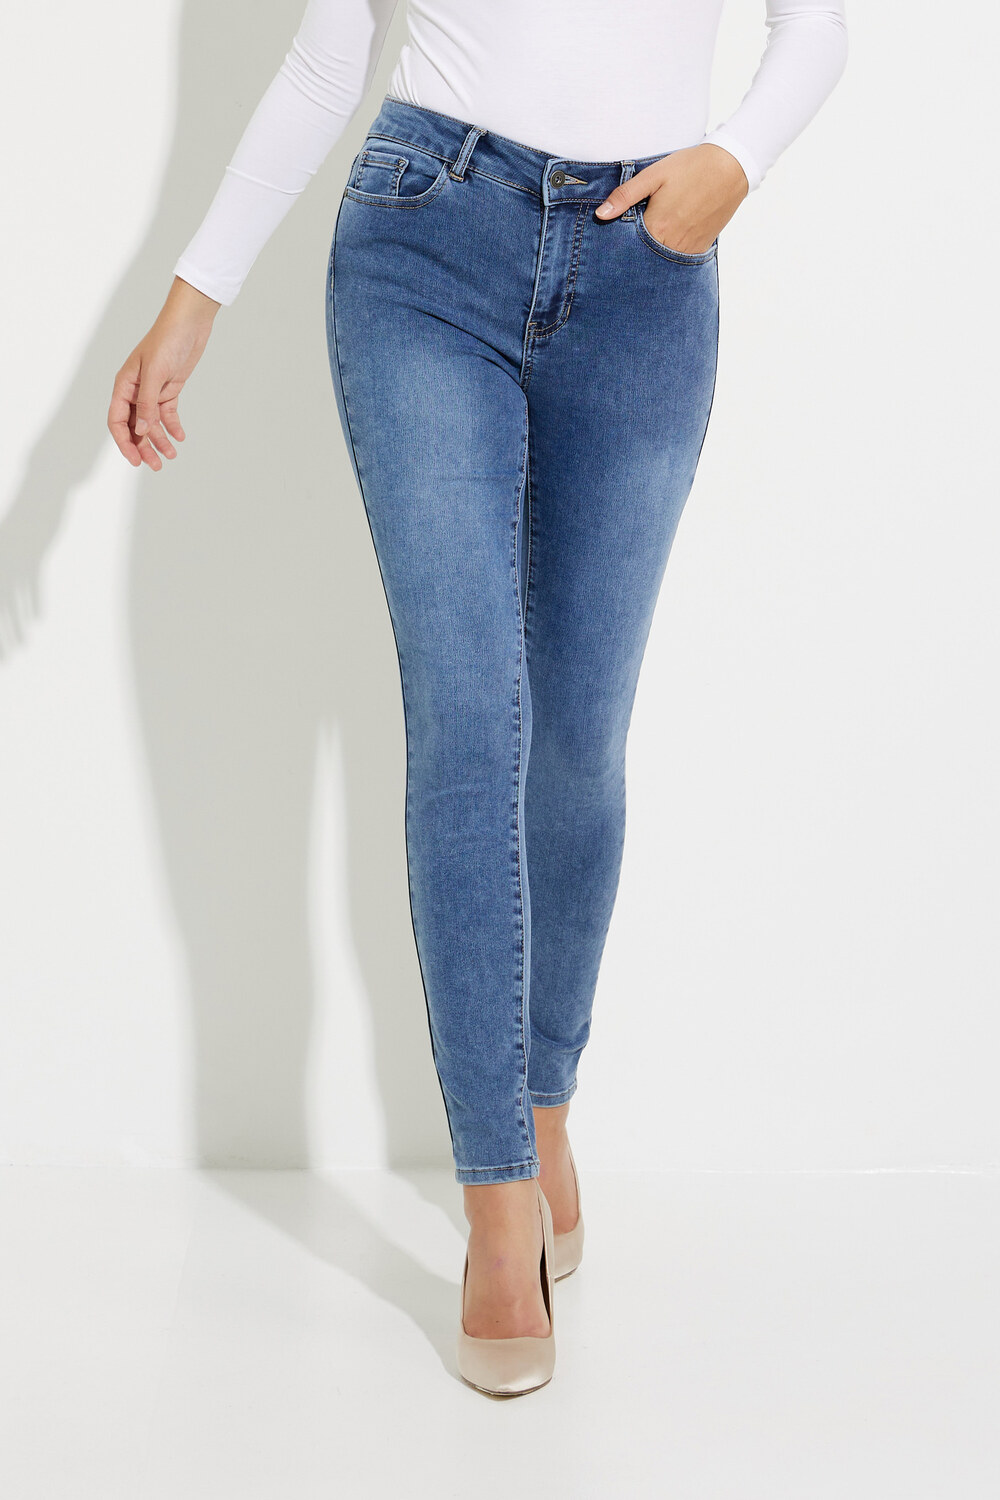 Jeans skinny extensible Modèle C5370. Bleu Moyen Denim